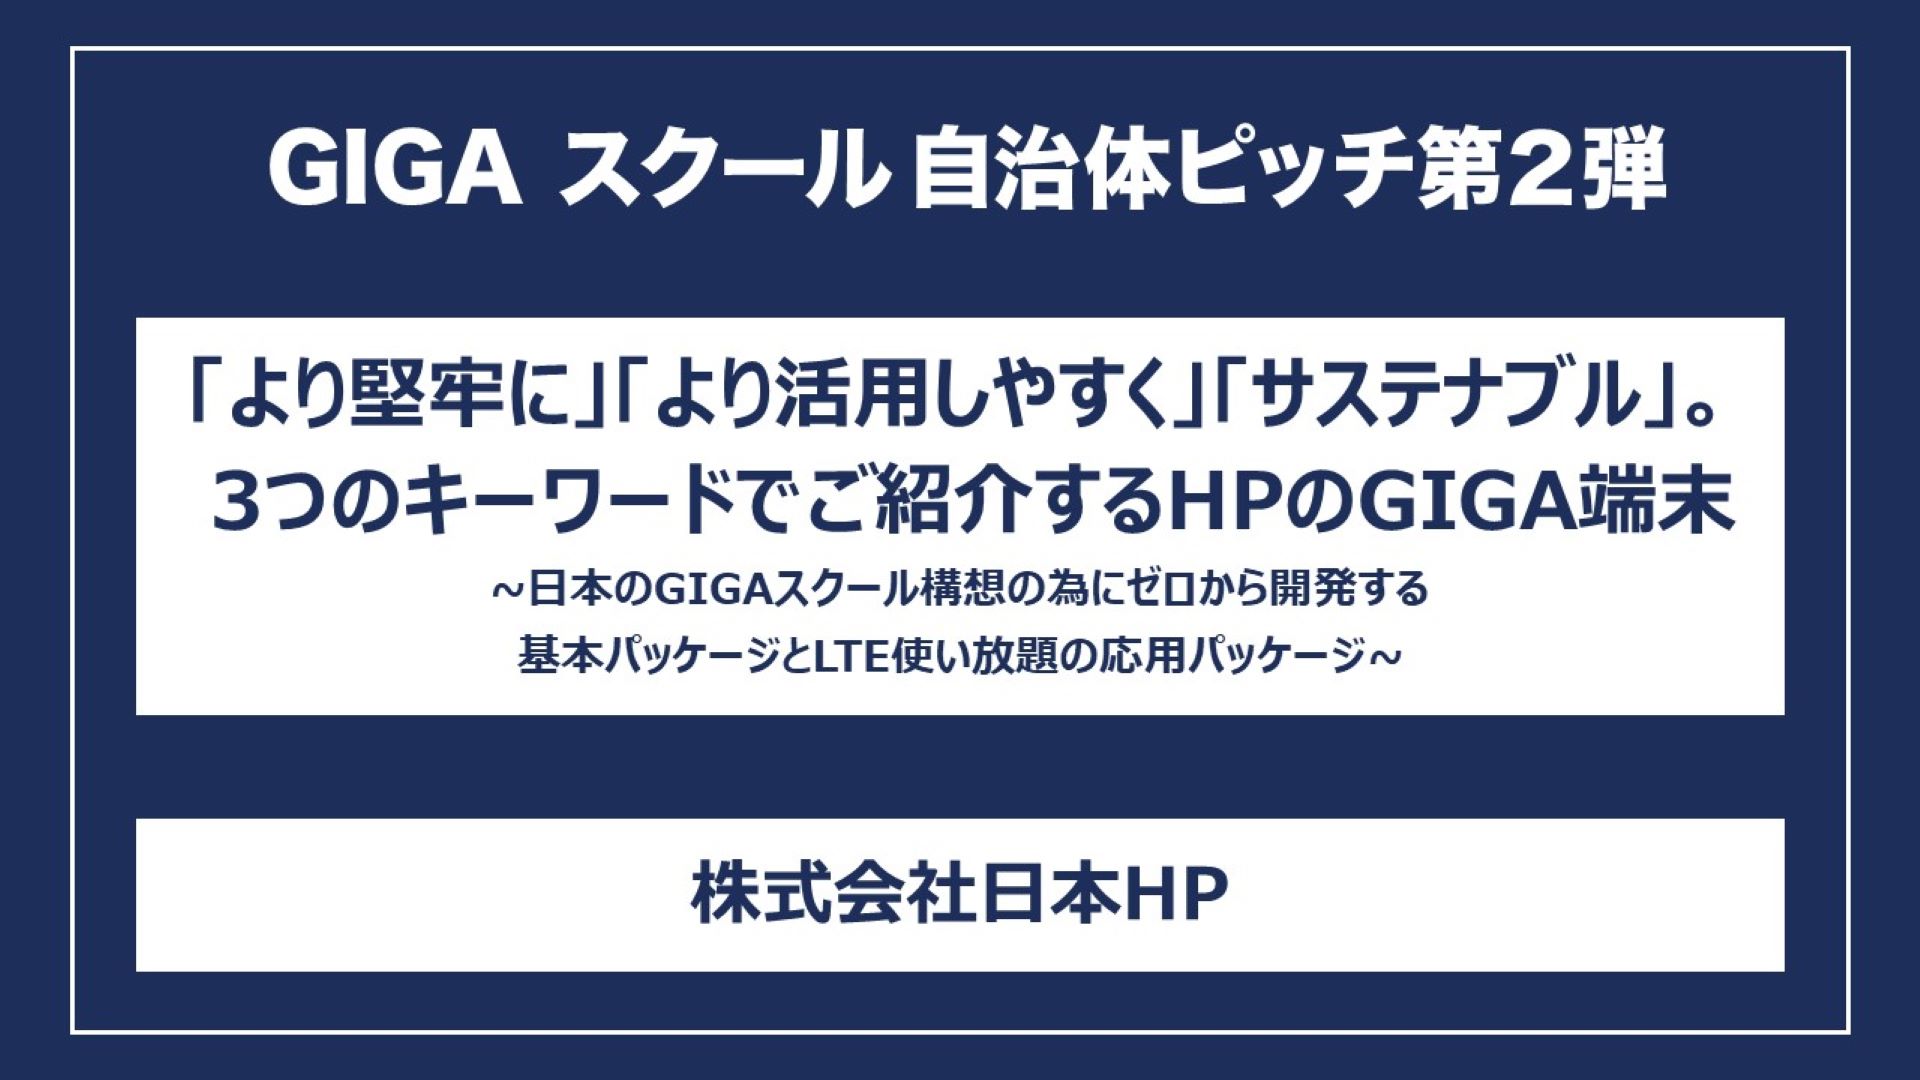 「より堅牢に」「より活用しやすく」「サステナブル」。3つのキーワードでご紹介するHPのGIGA端末～日本のGIGAスクール構想の為にゼロから開発する基本パッケージとLTE使い放題の応用パッケージ～